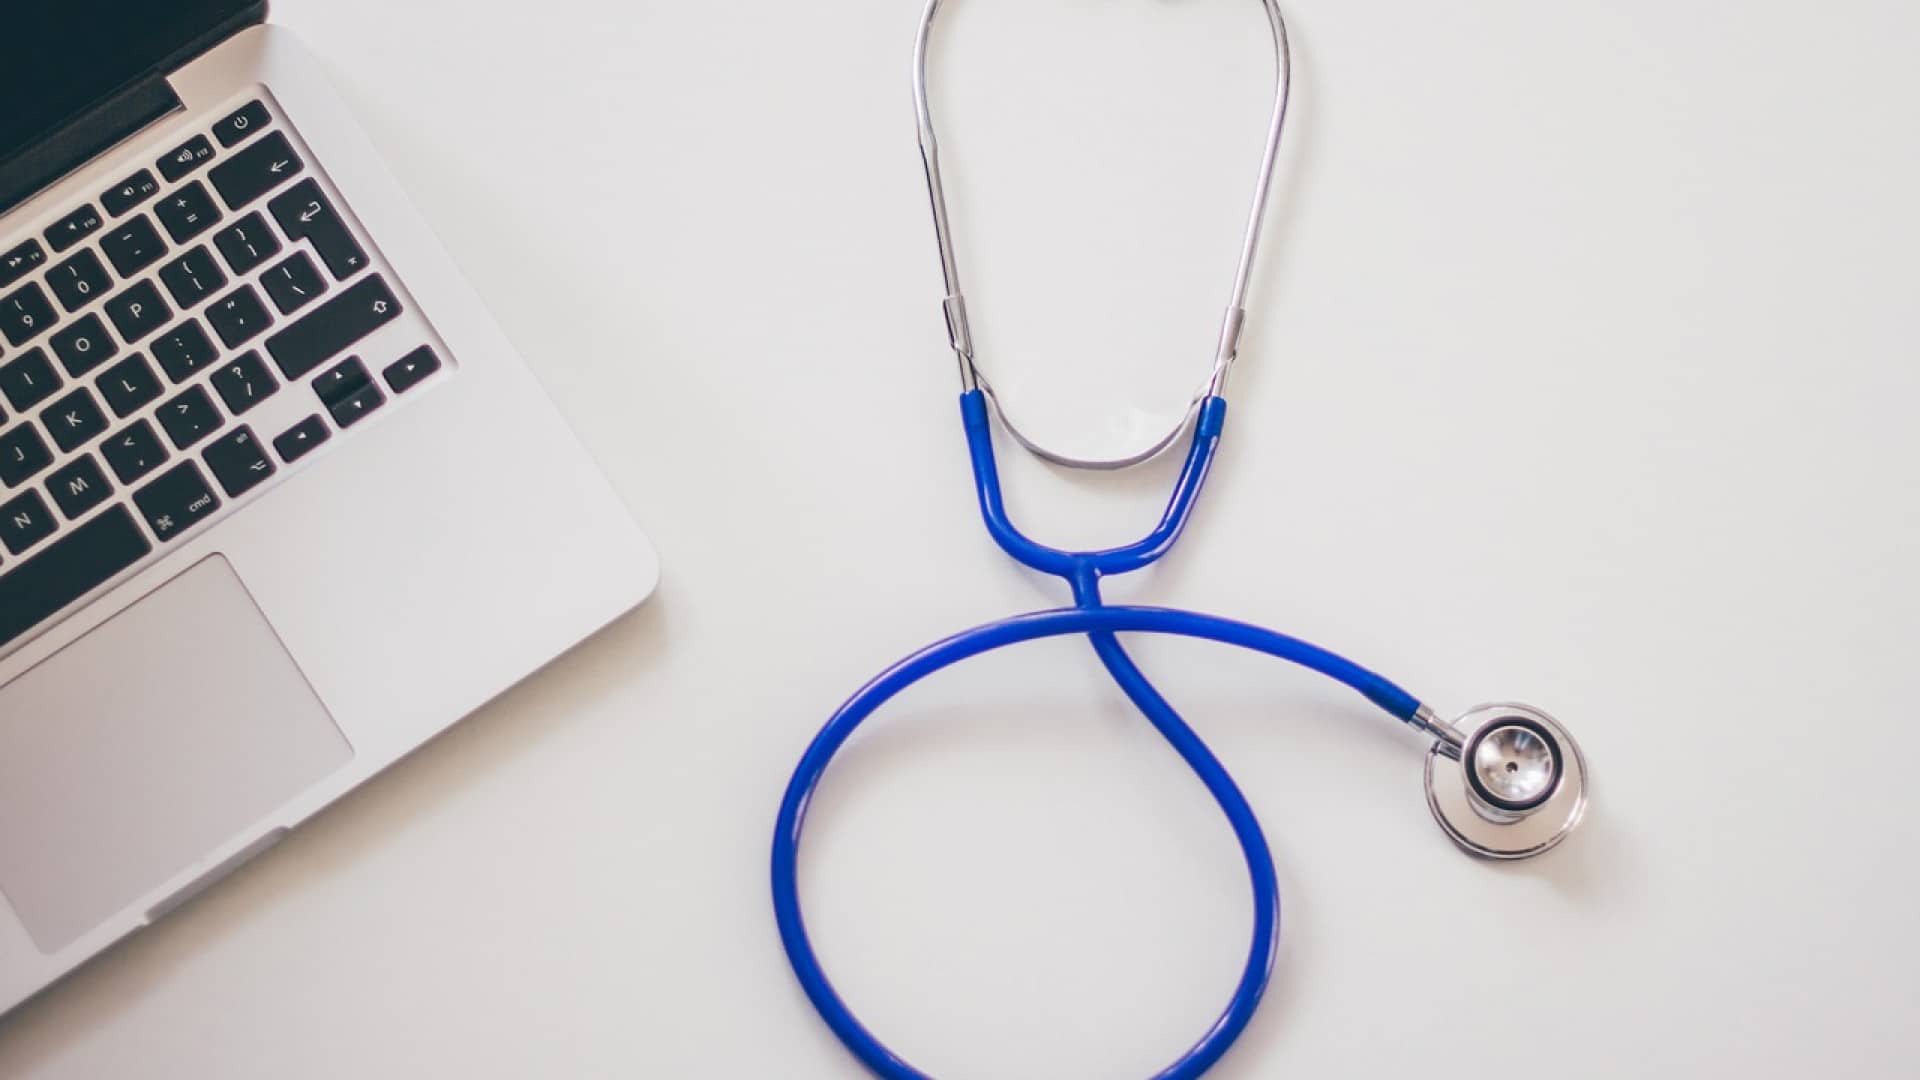 Un ordinateur portable et un stéthoscope sur une surface blanche, symbolisant la santé et la technologie.